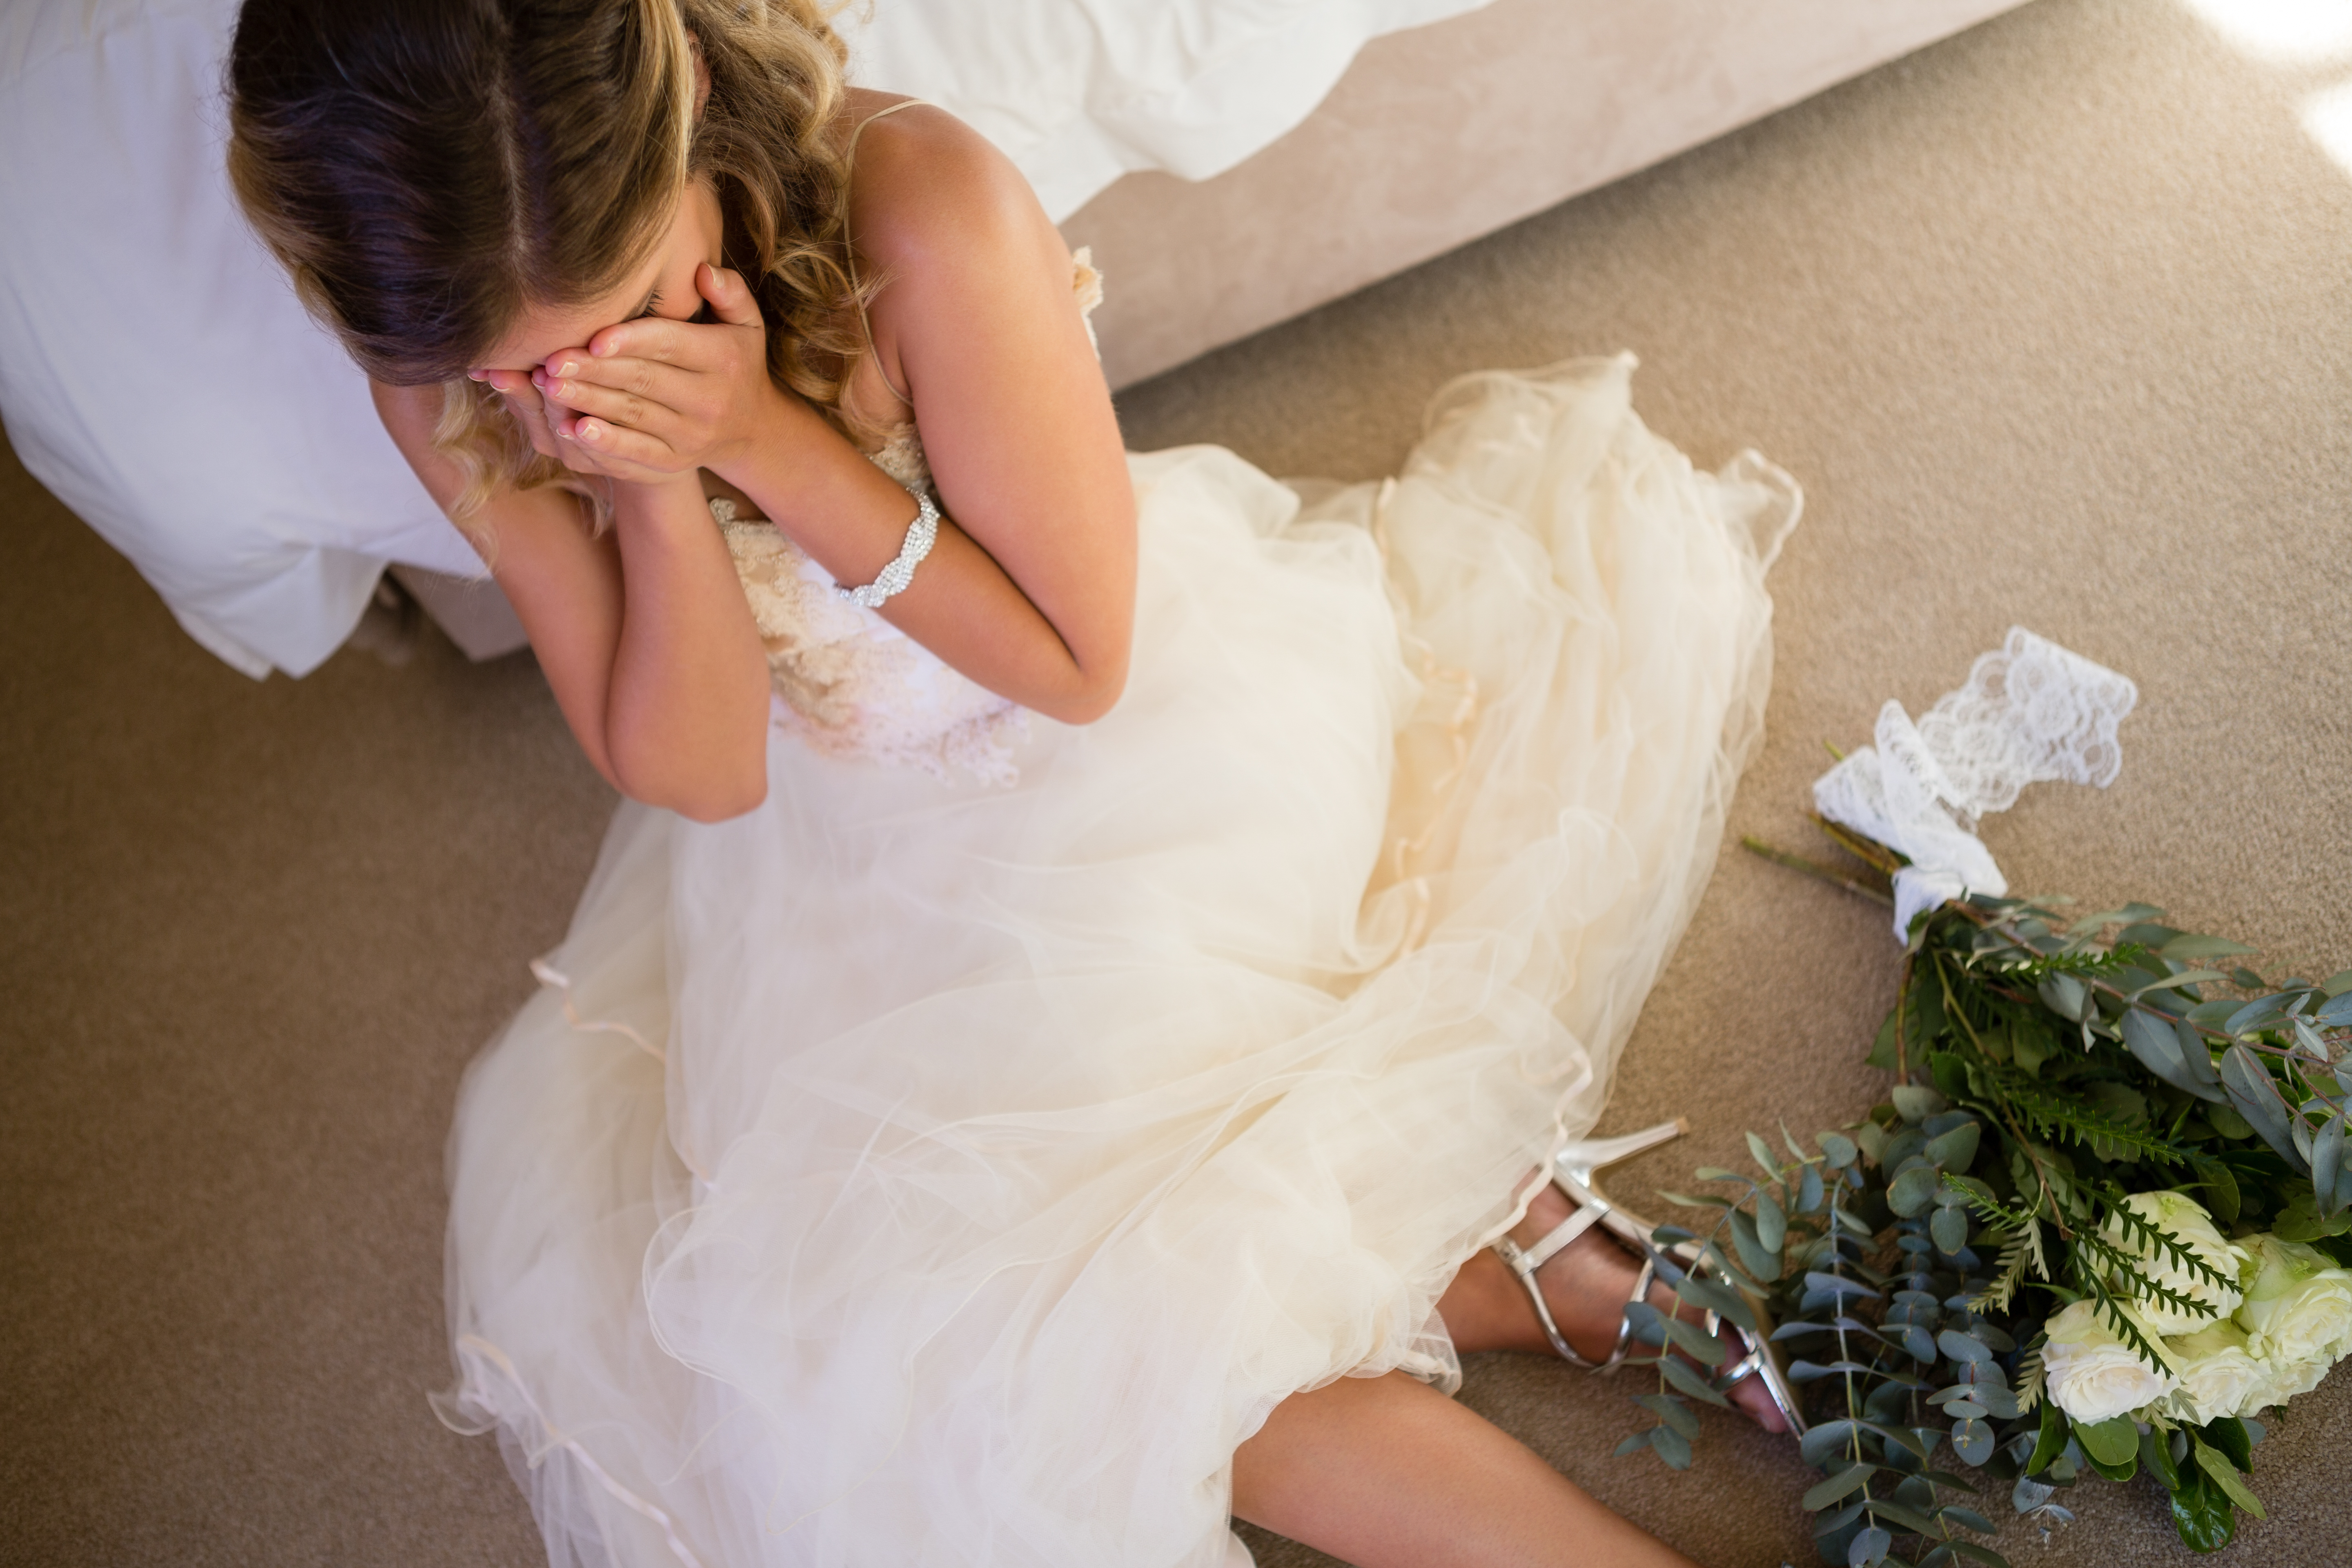 Una novia sentada en el suelo llorando | Fuente: Shutterstock